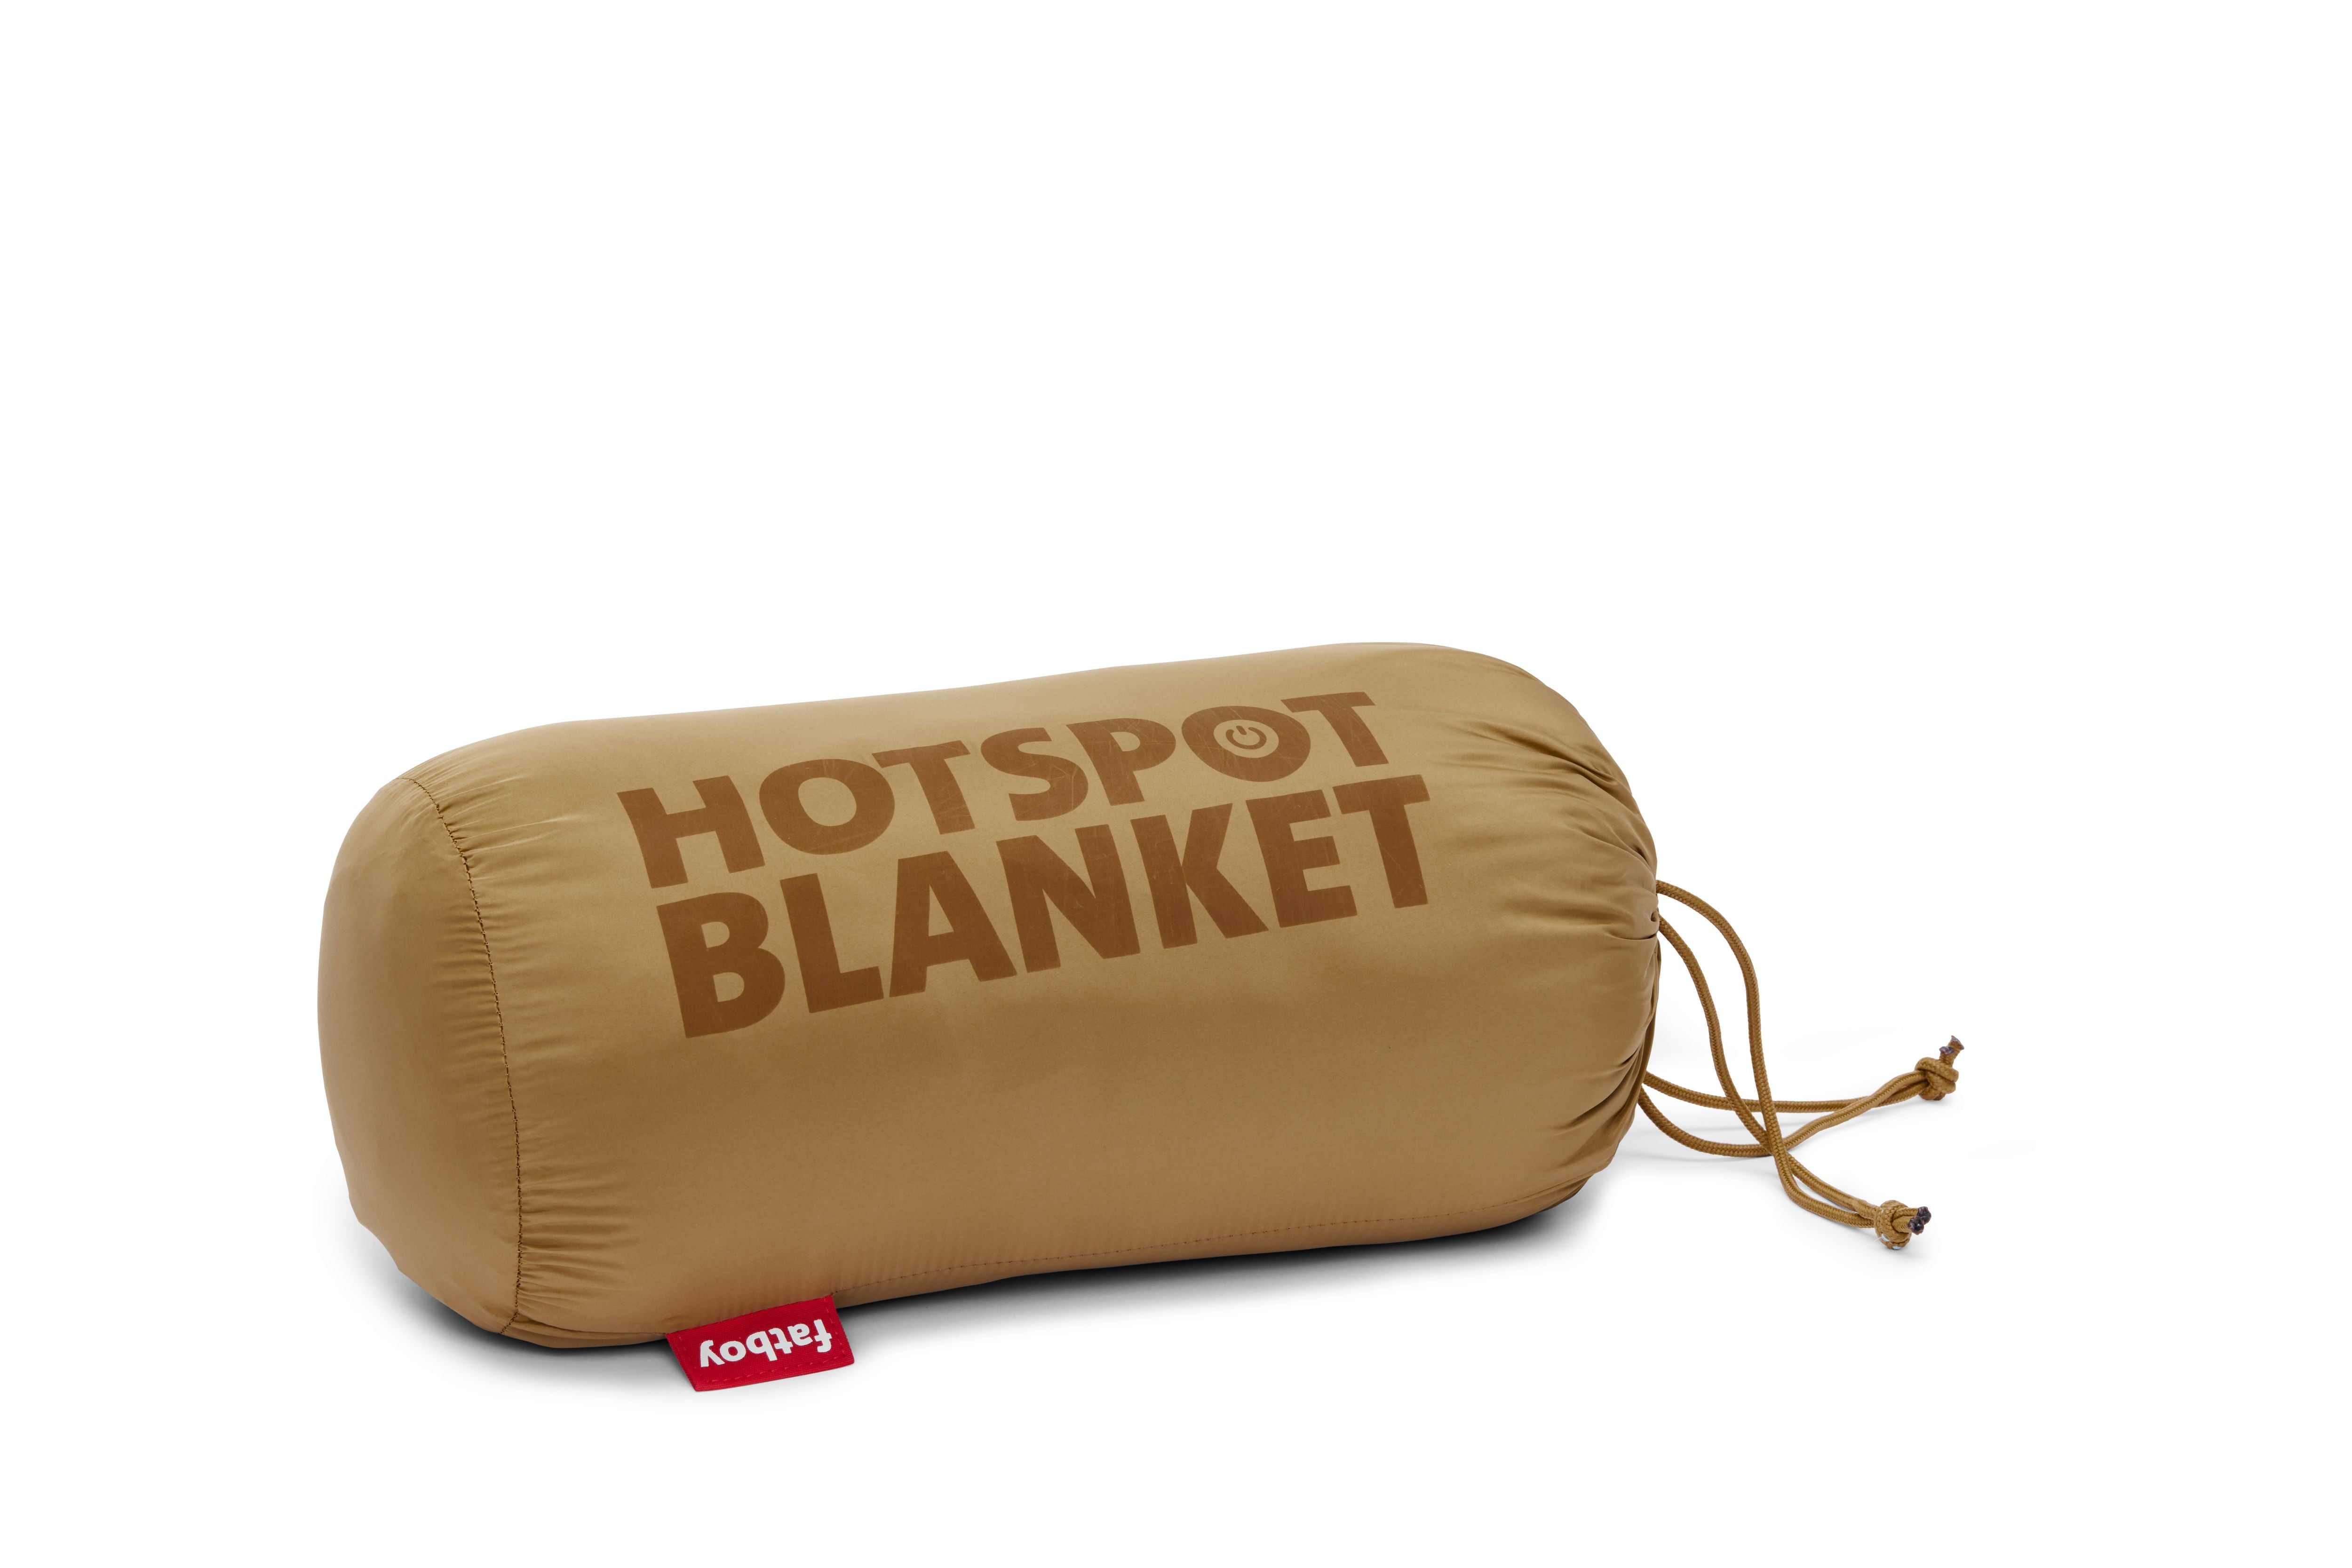 fatboy Hotspot Blanket Elektrisch beheizte Decke, Toffee